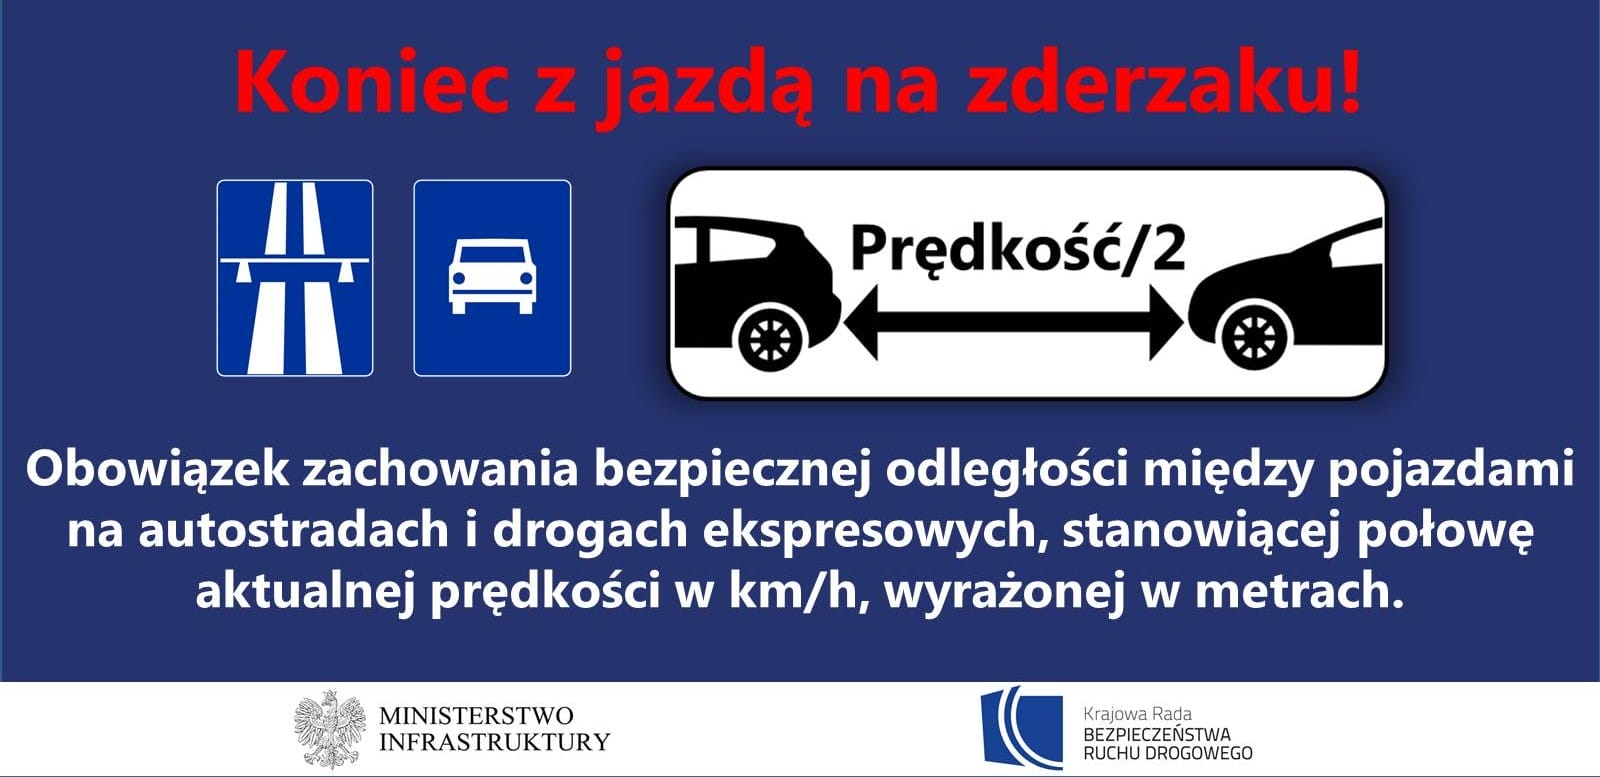 WAŻNE! Nowe przepisy ruchu drogowego już od 1 czerwca